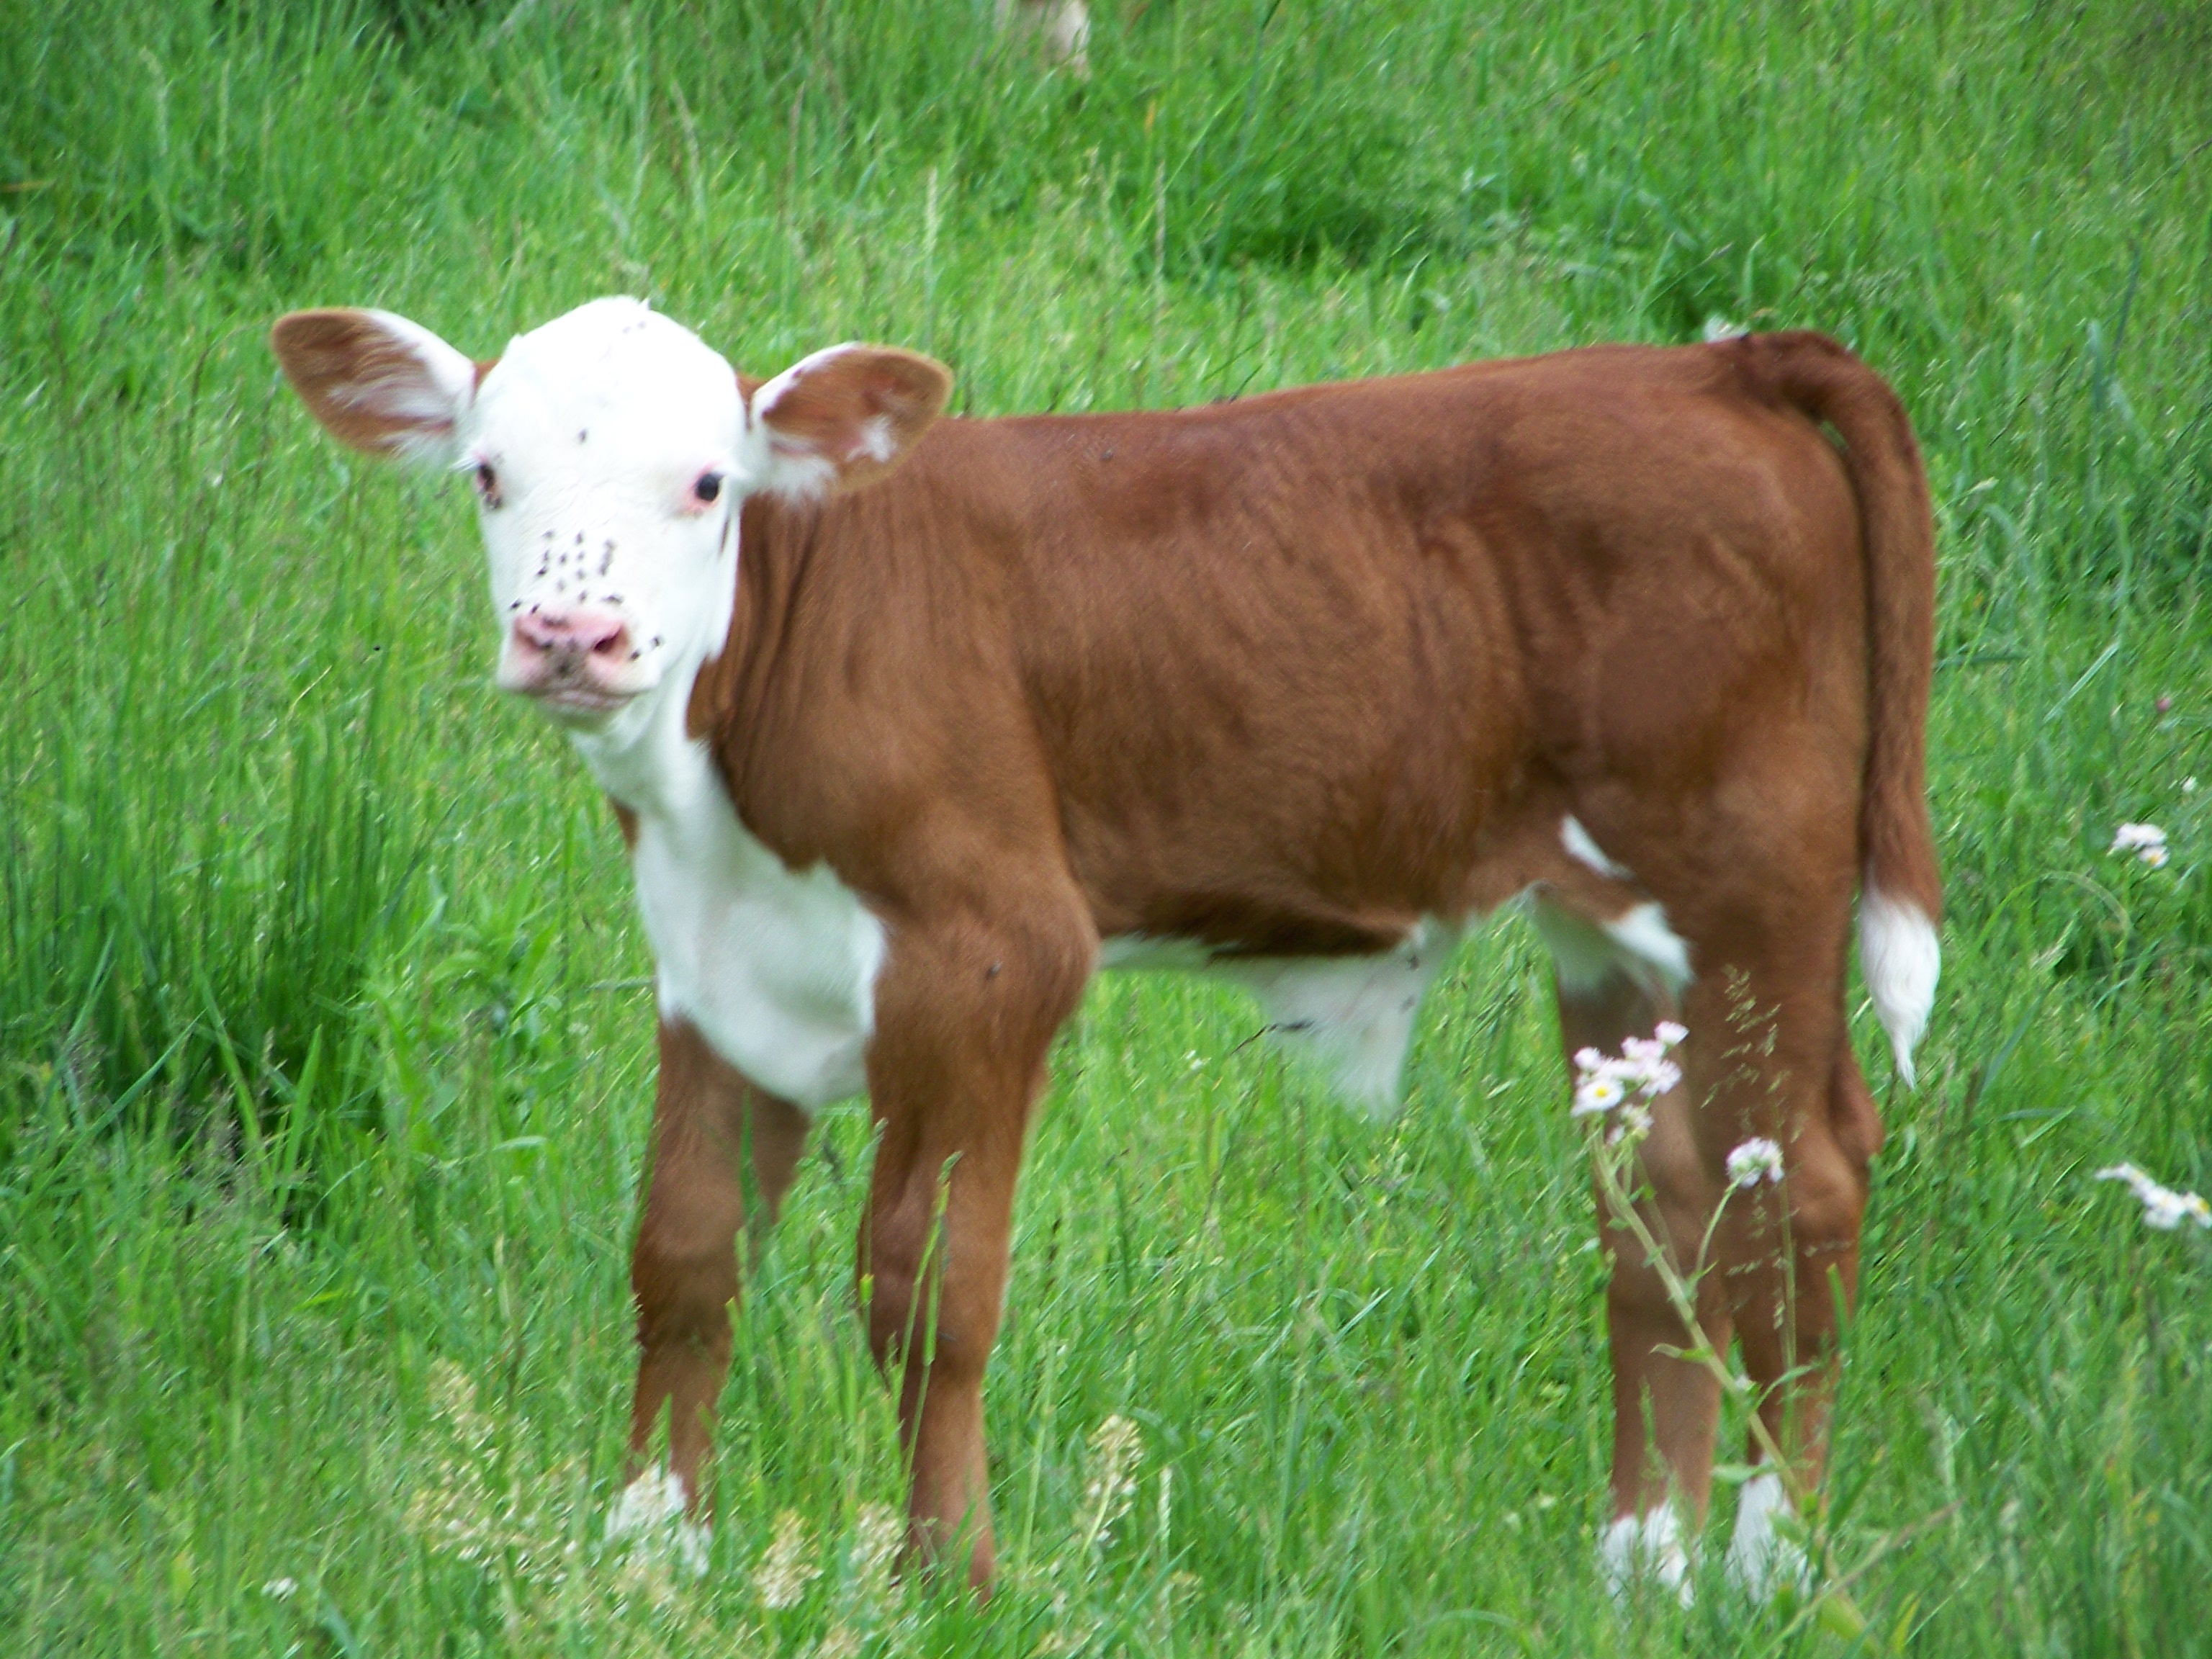 Little calf photo